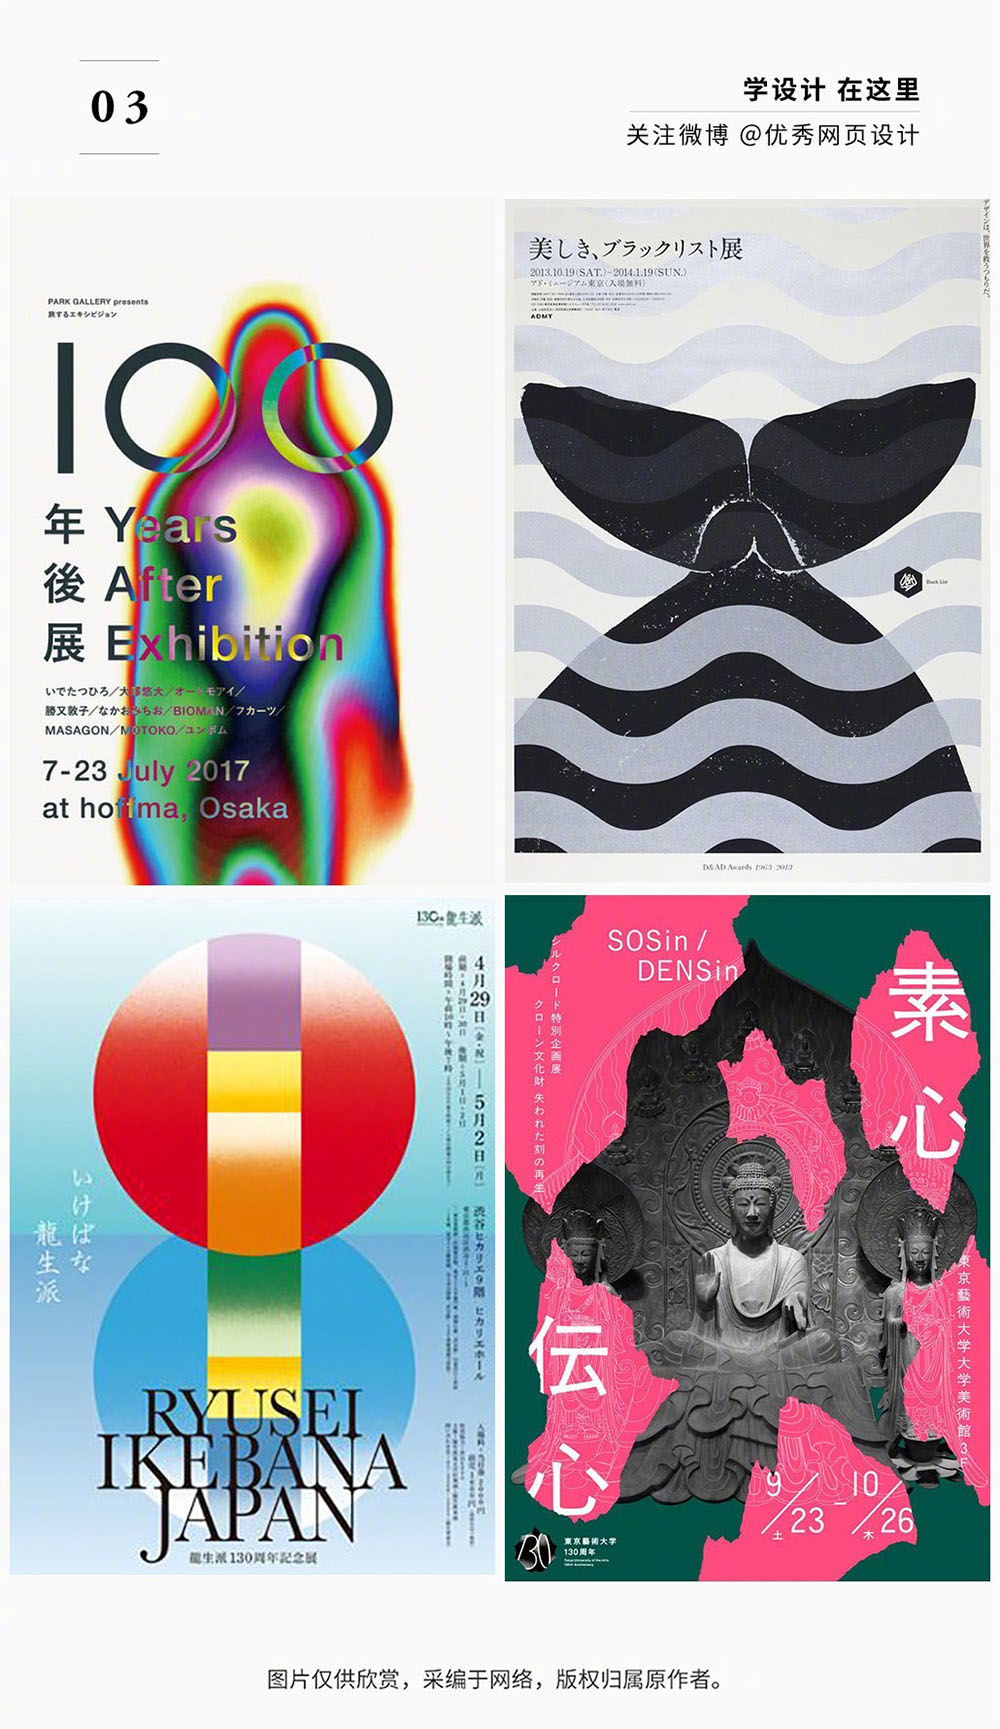 精选一组日本展览海报设计